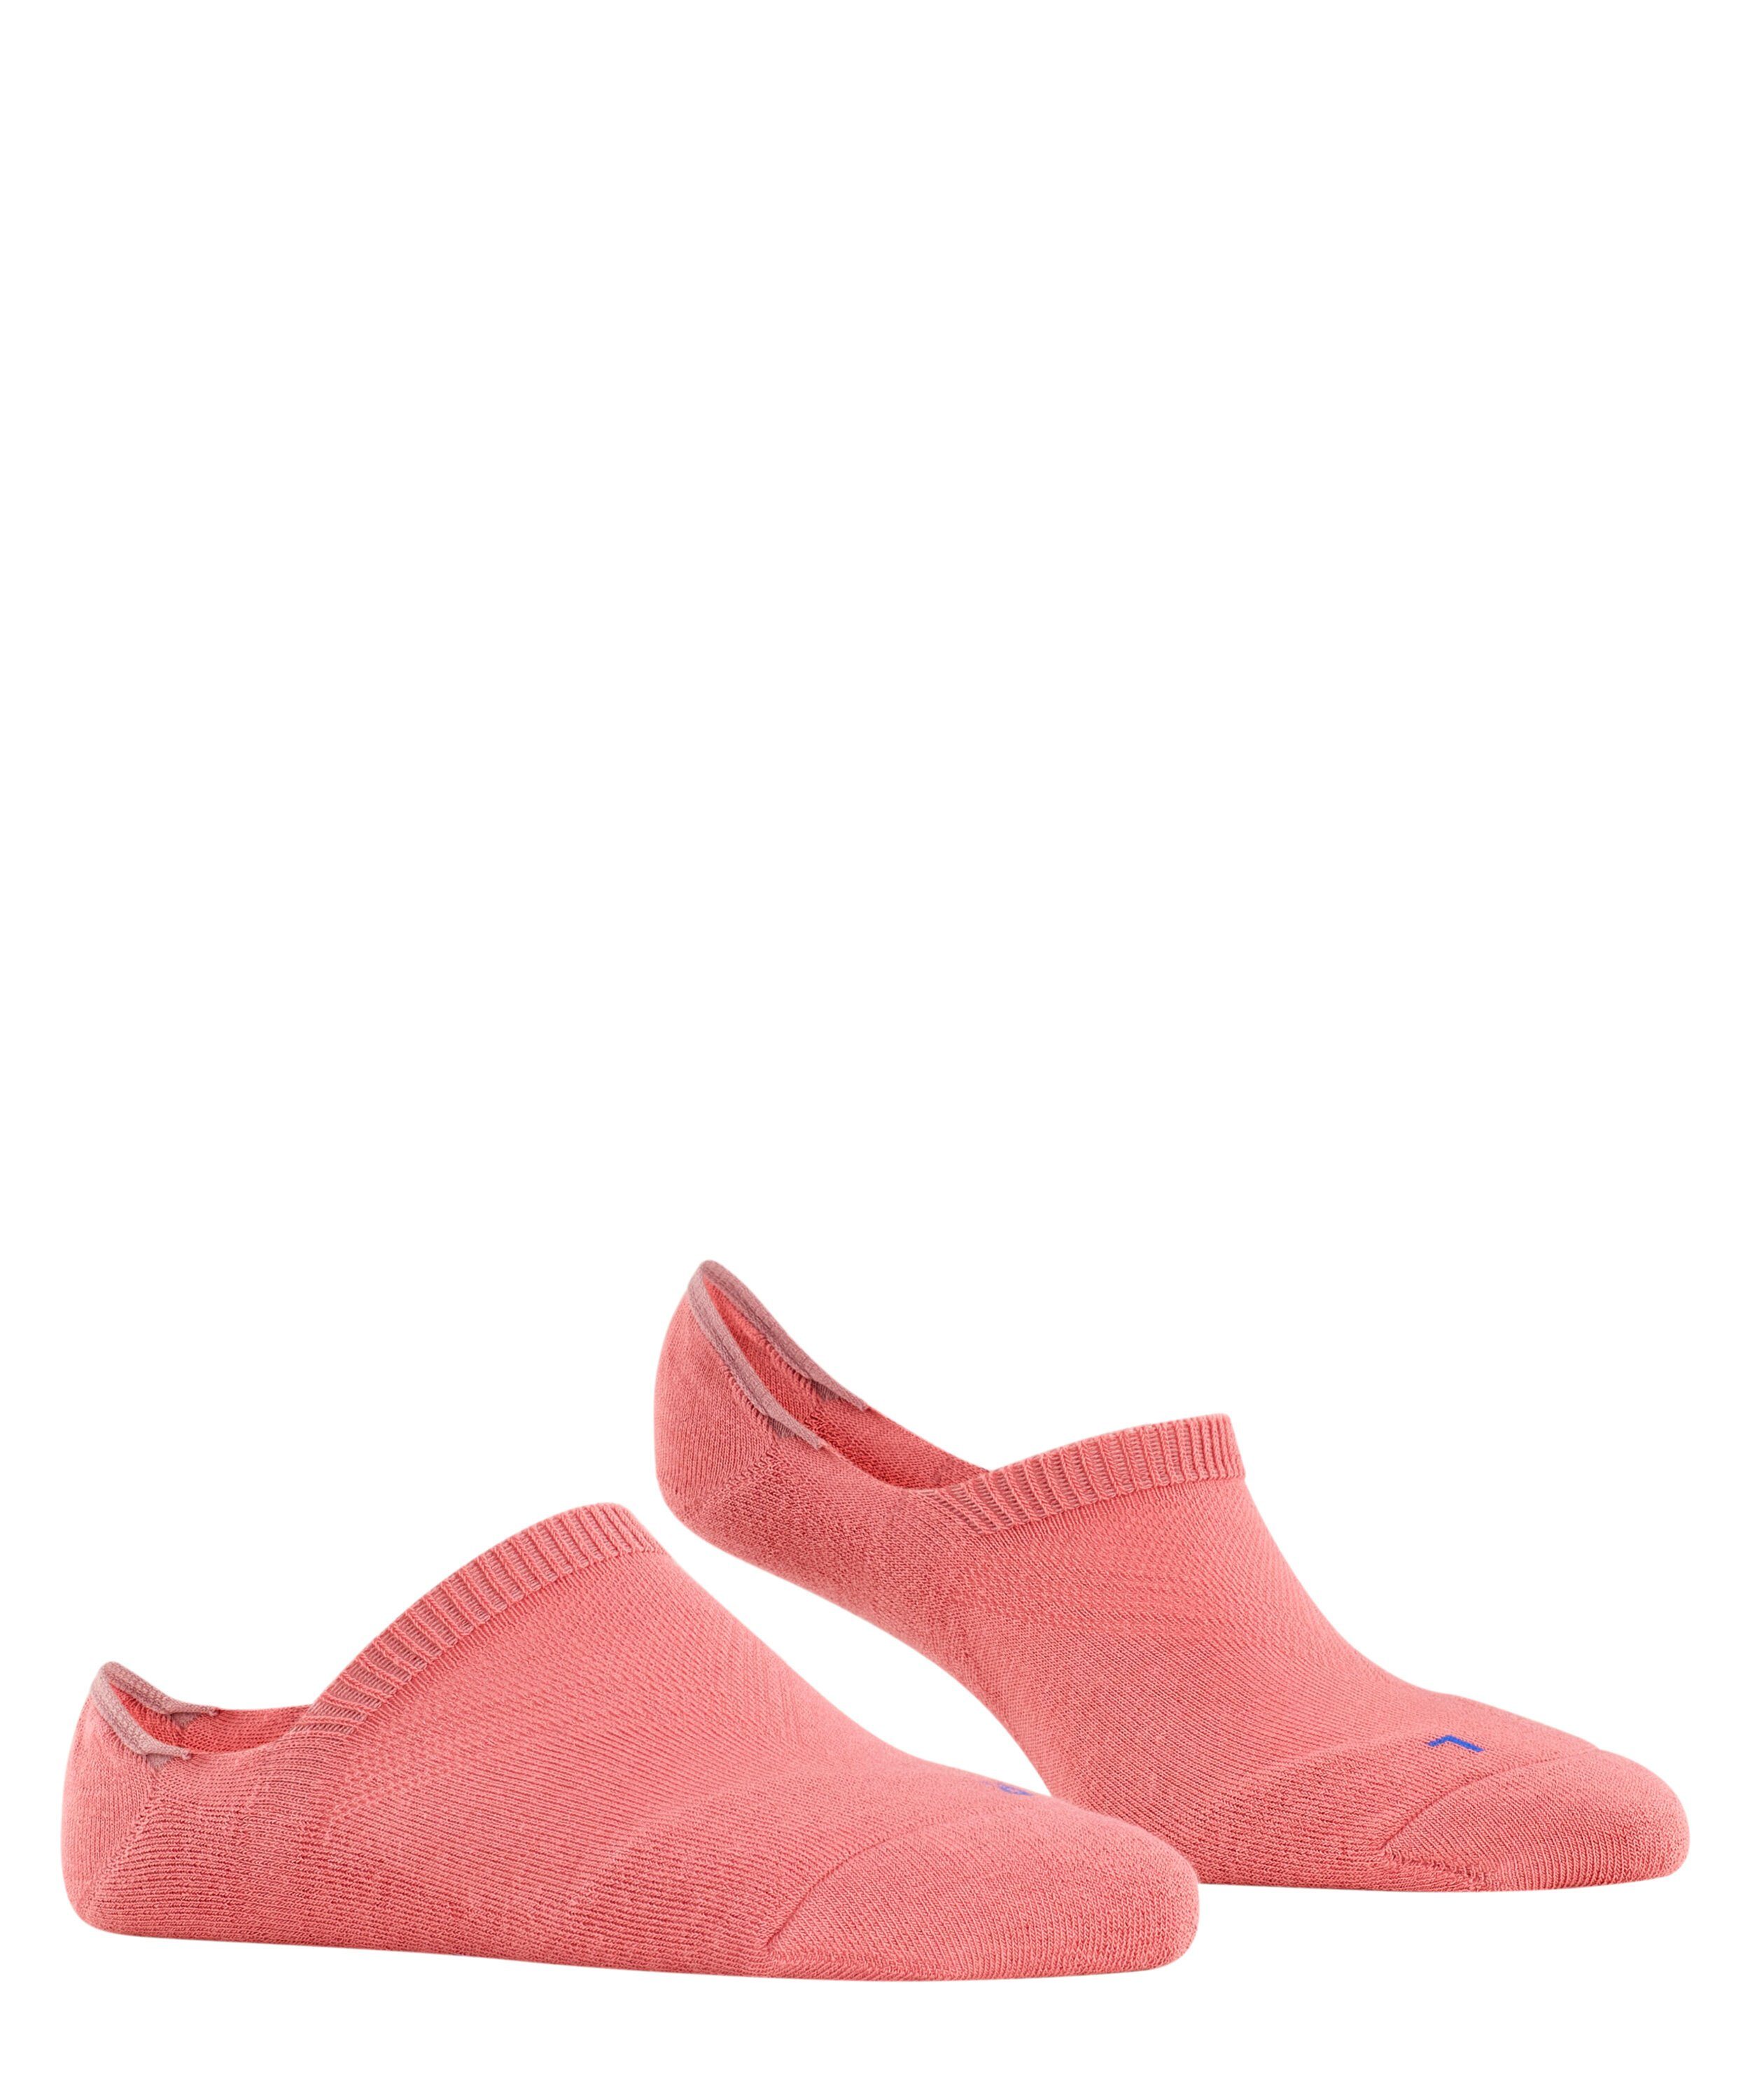 Cool Kick der (8684) durch powder Füßlinge FALKE in pink Ferse Silikon rutschfest